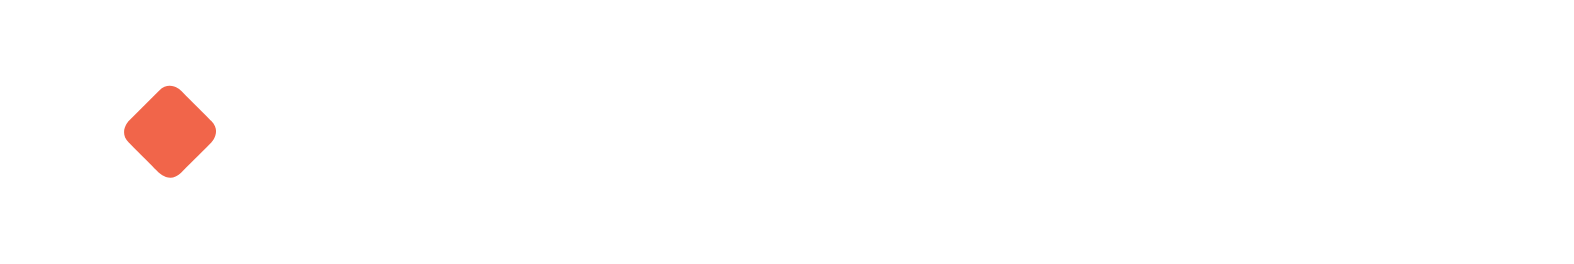 Cimpress logo large for dark backgrounds (transparent PNG)